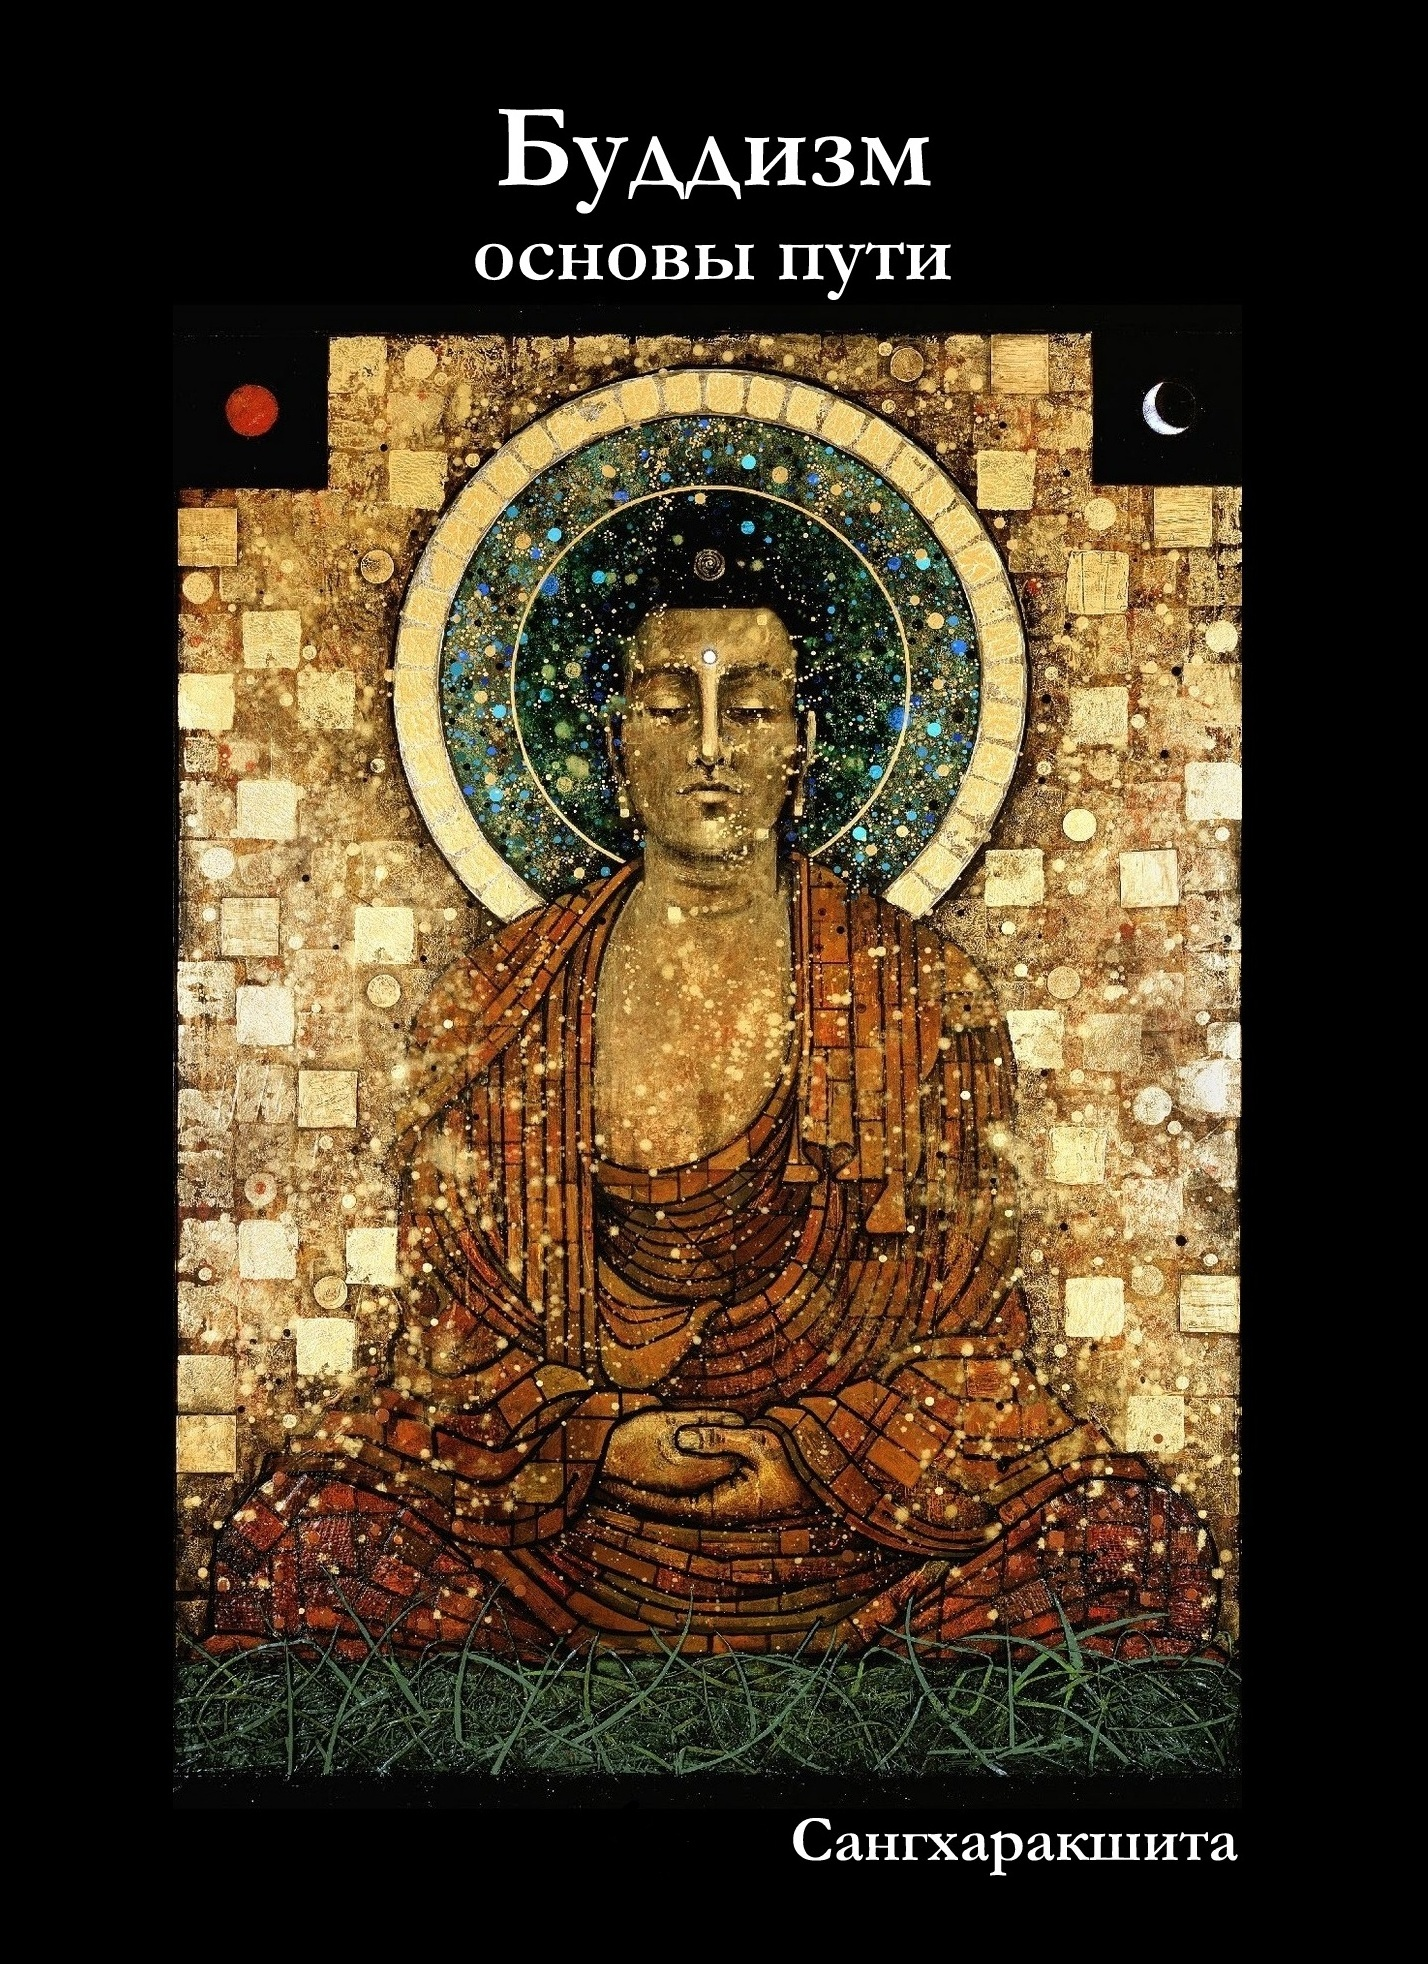 Книги о буддизме для начинающих скачать бесплатно